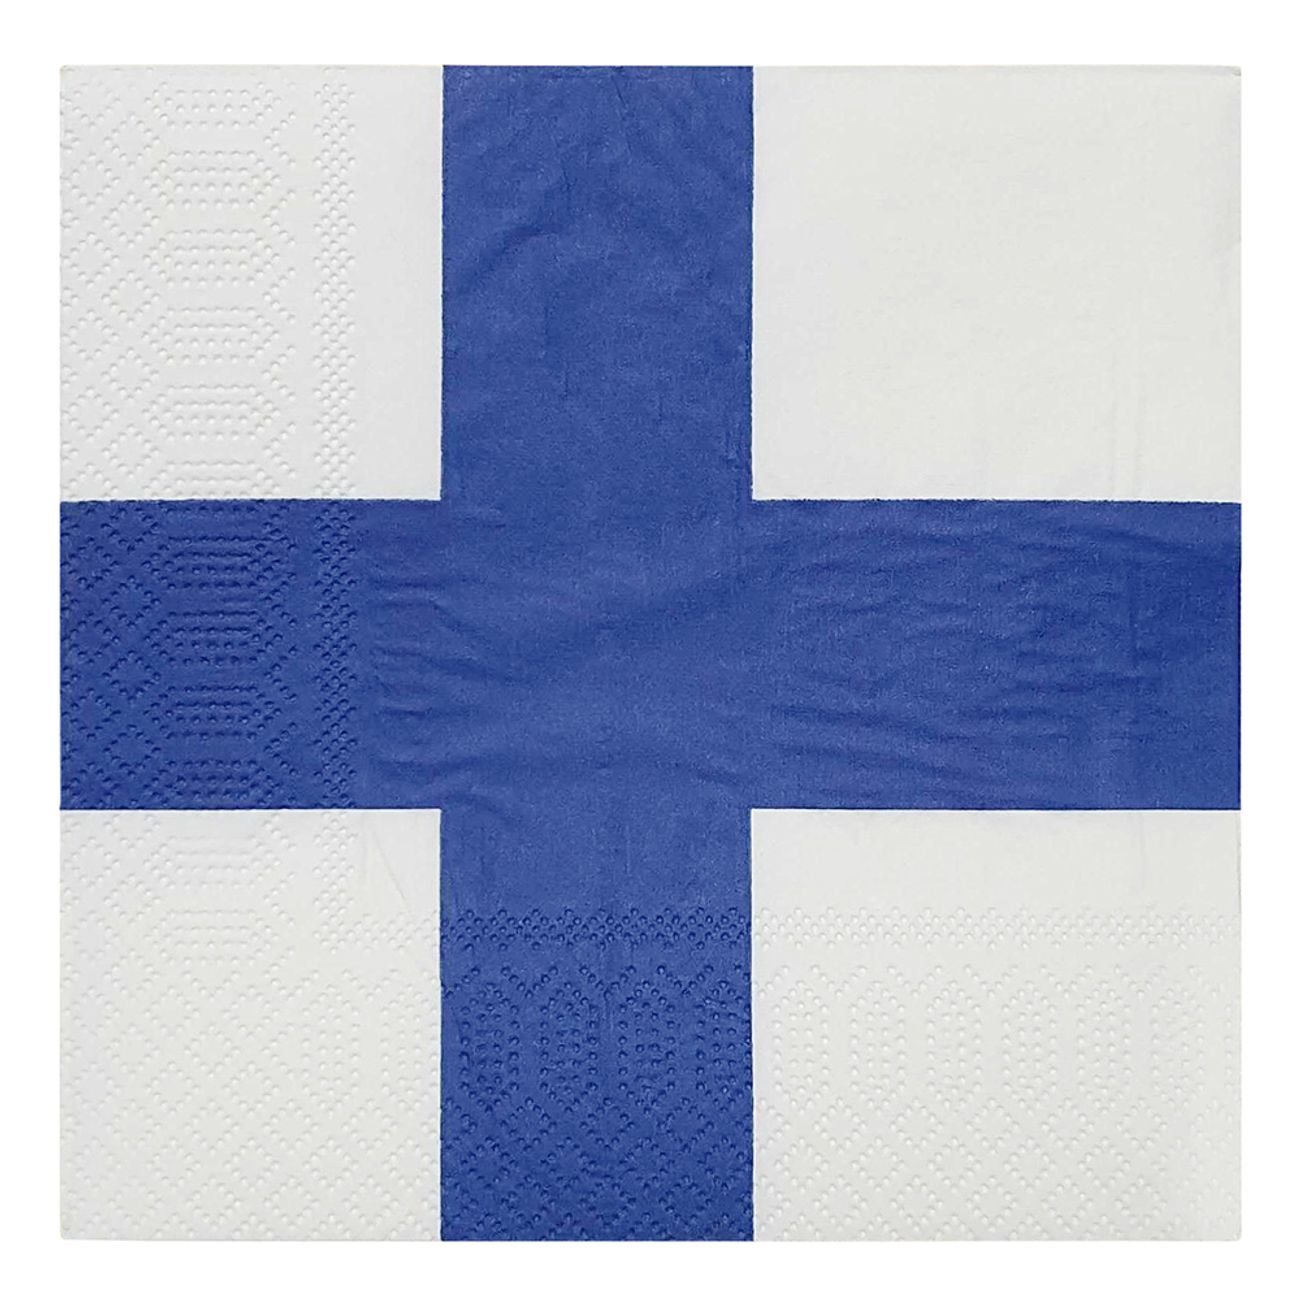 servetter-finska-flaggan-29114-2